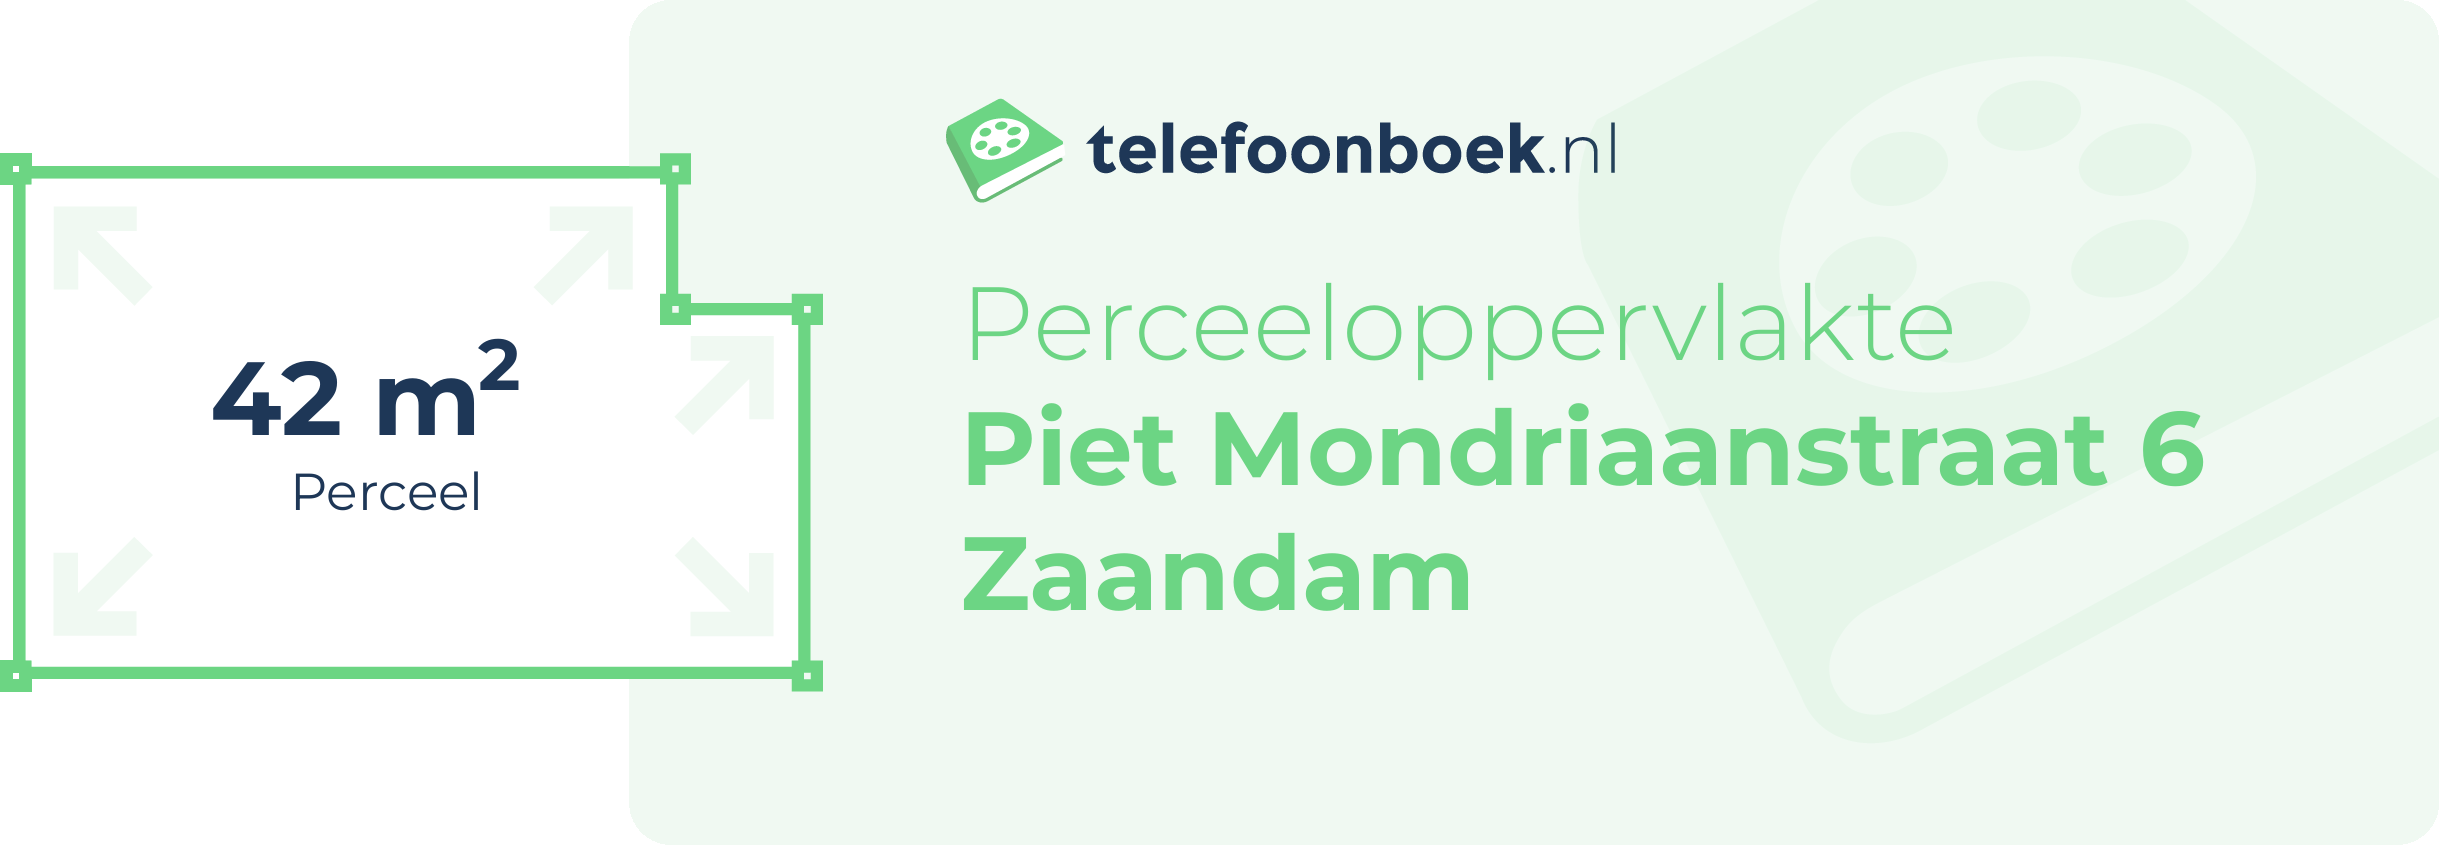 Perceeloppervlakte Piet Mondriaanstraat 6 Zaandam